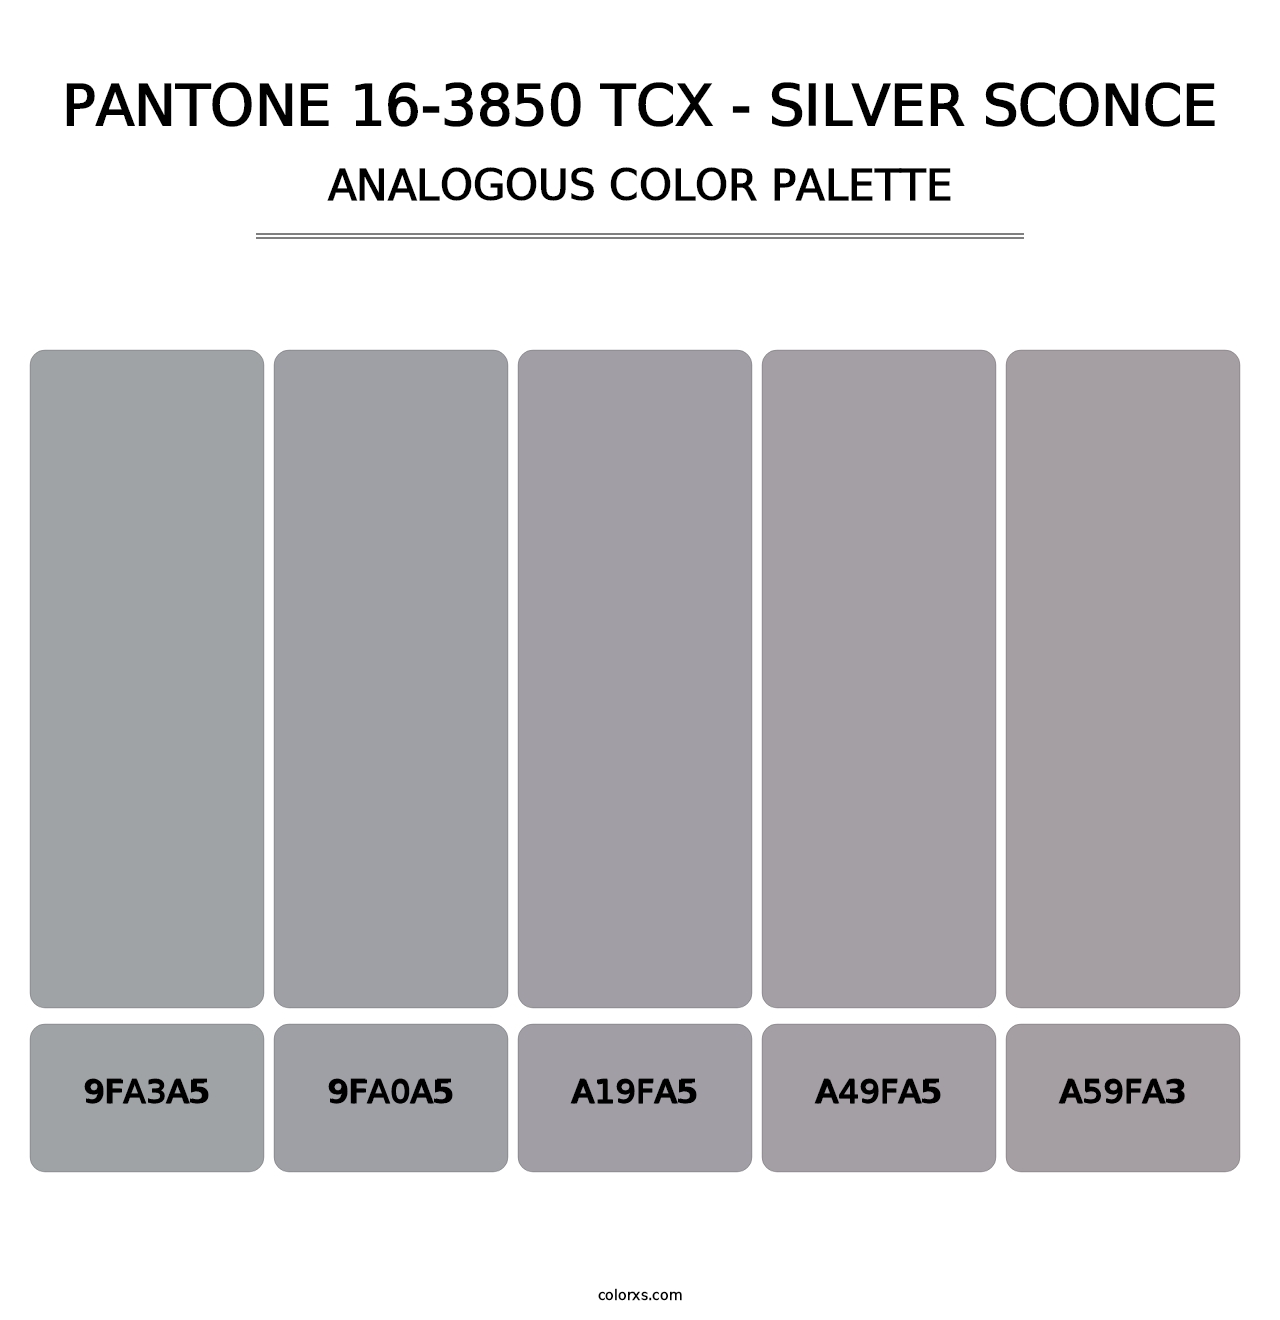 PANTONE 16-3850 TCX - Silver Sconce - Analogous Color Palette